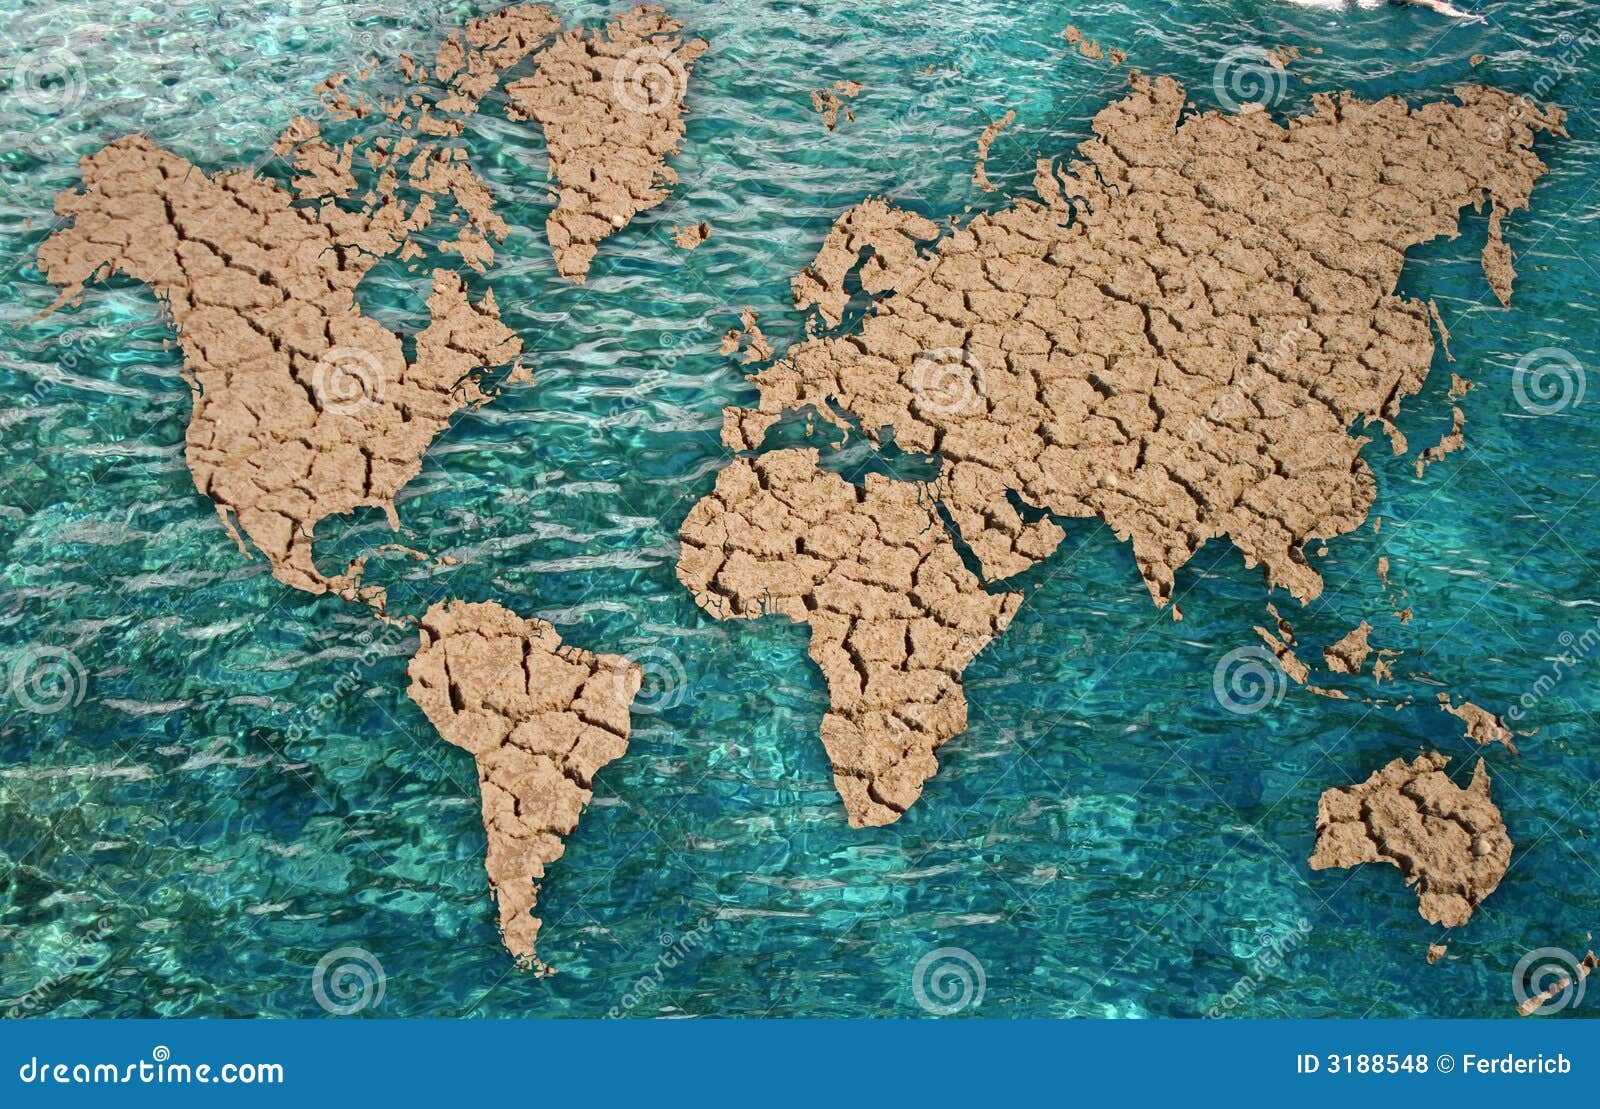 Aquecimento global. Exprima o mapa com os oceanos na água e em países secos